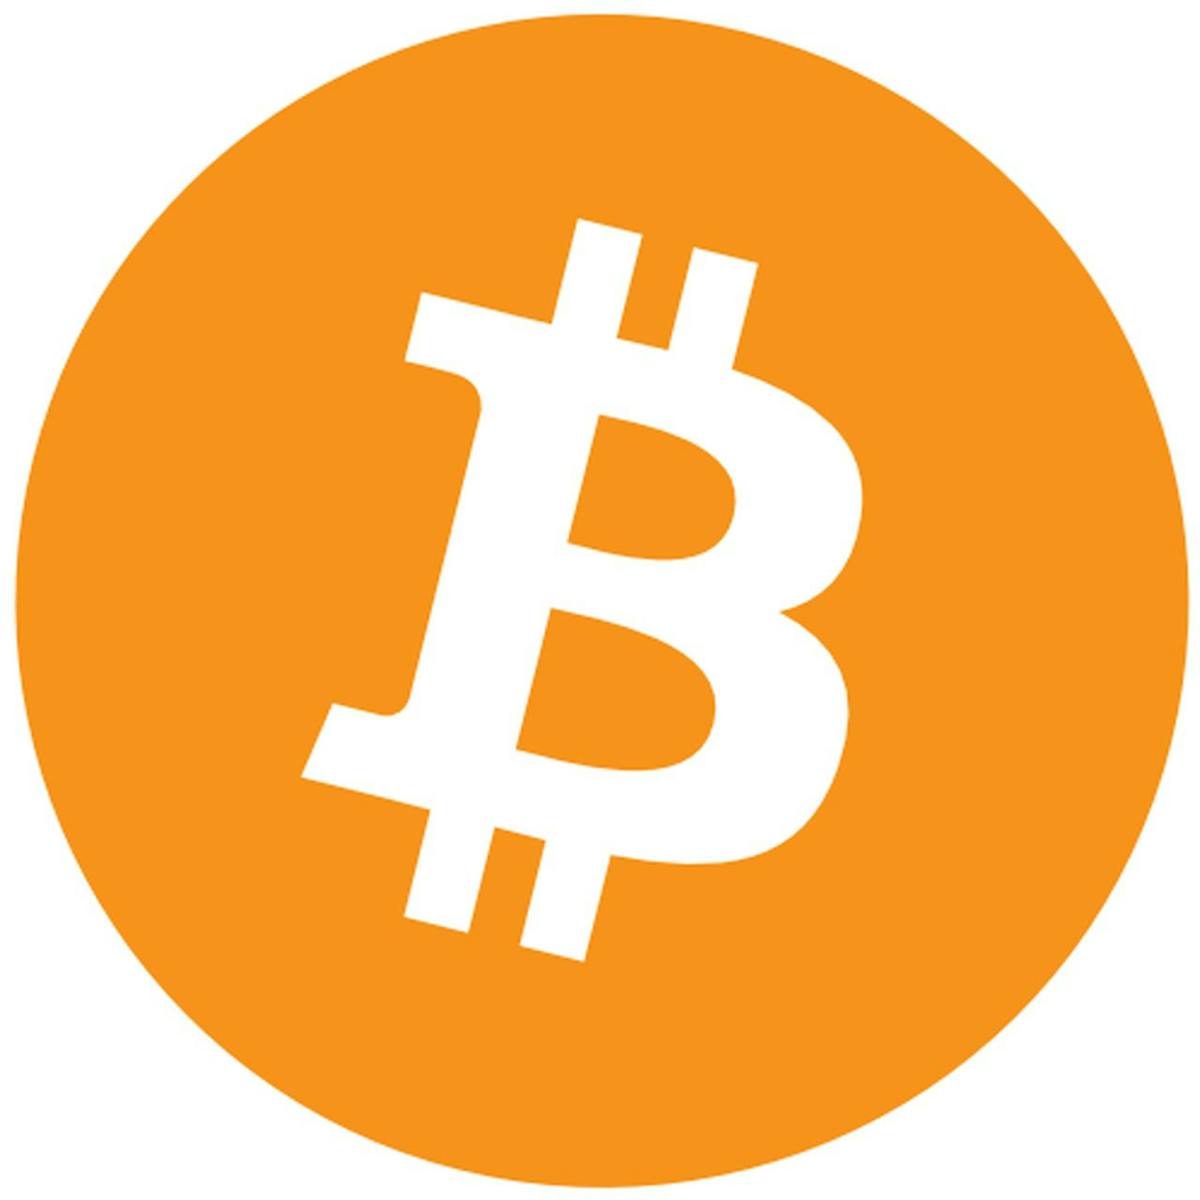 Woher kommst das Bitcoin Logo? – Wir gehen der Herkunft des Logos nach